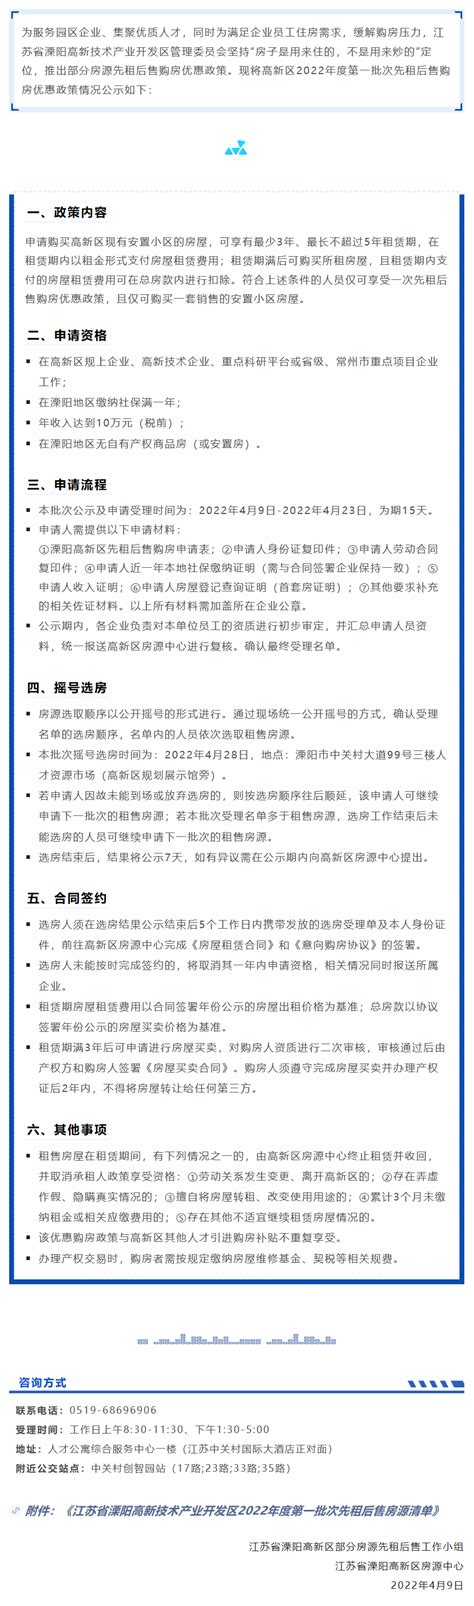 江苏省溧阳高新技术产业开发区2022年度第一批次先租后售购房优惠政策情况公示